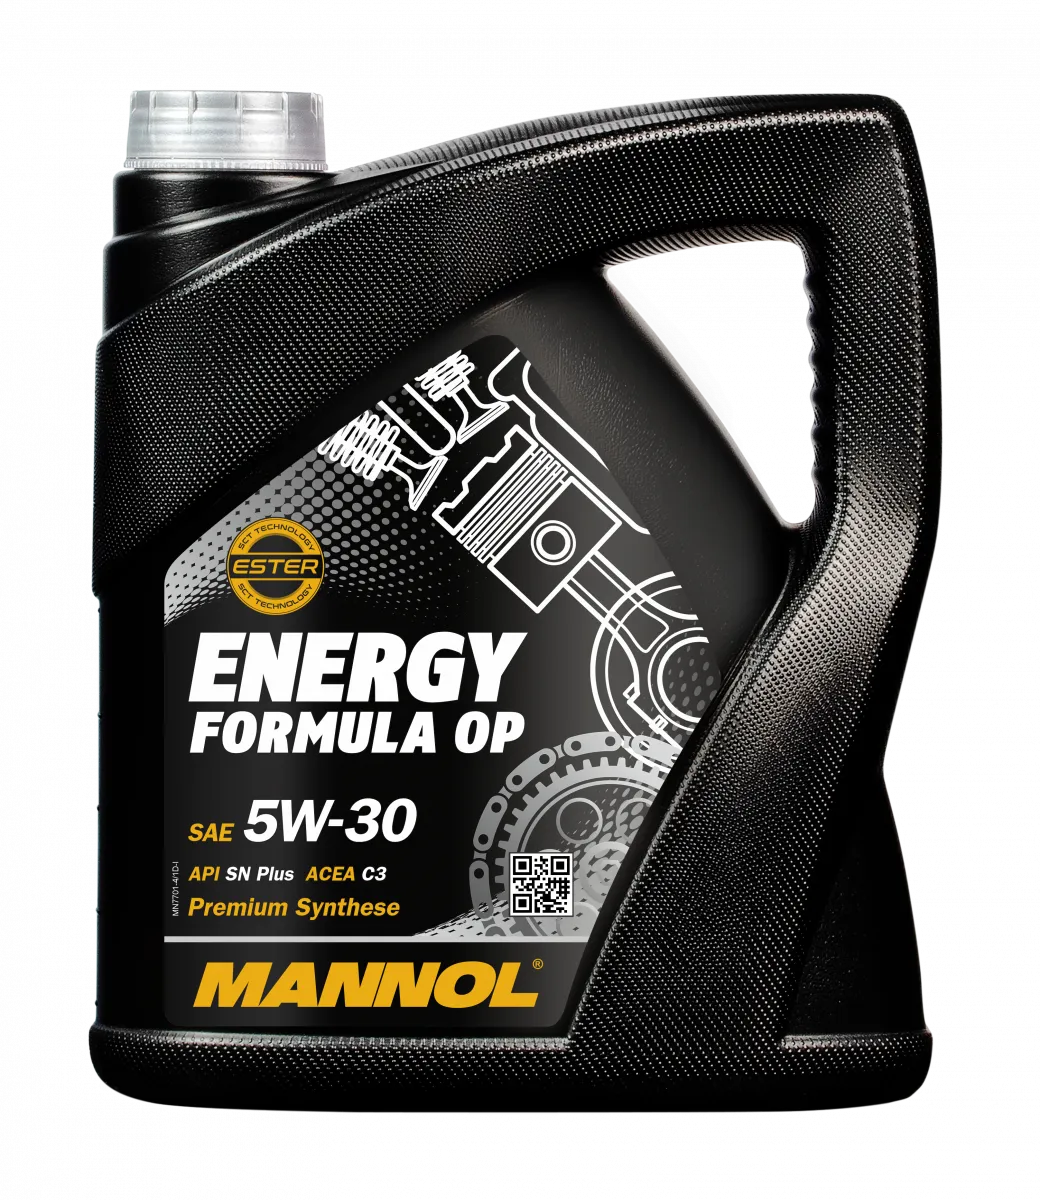 mannol energy formula op 5W-30#1